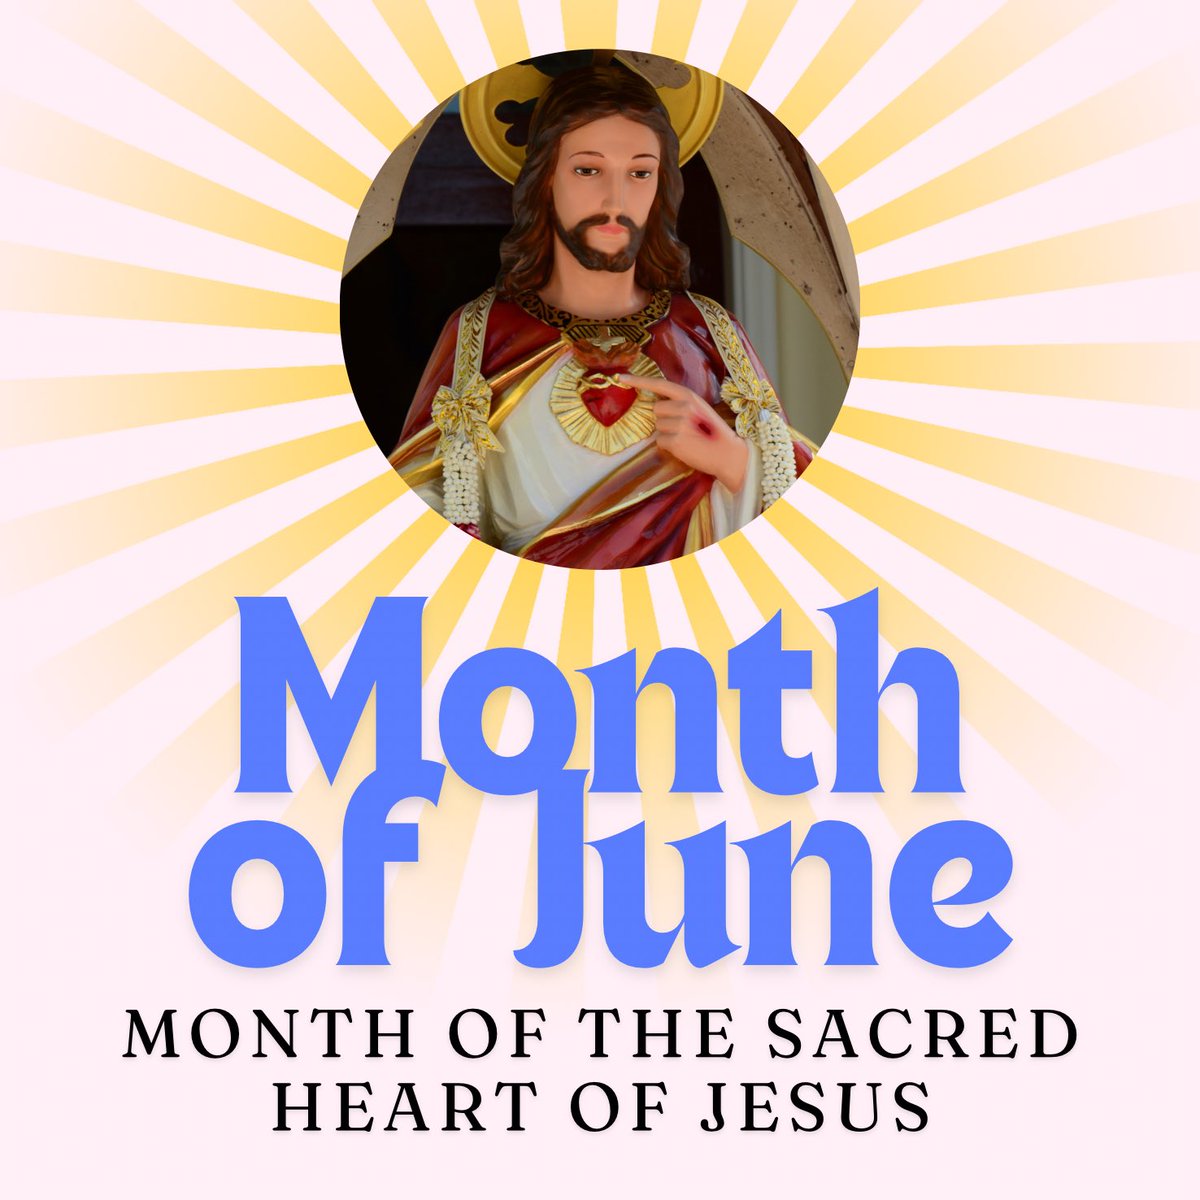 MONTH OF JUNE! 🙏

#SacredHeart #HelloJune